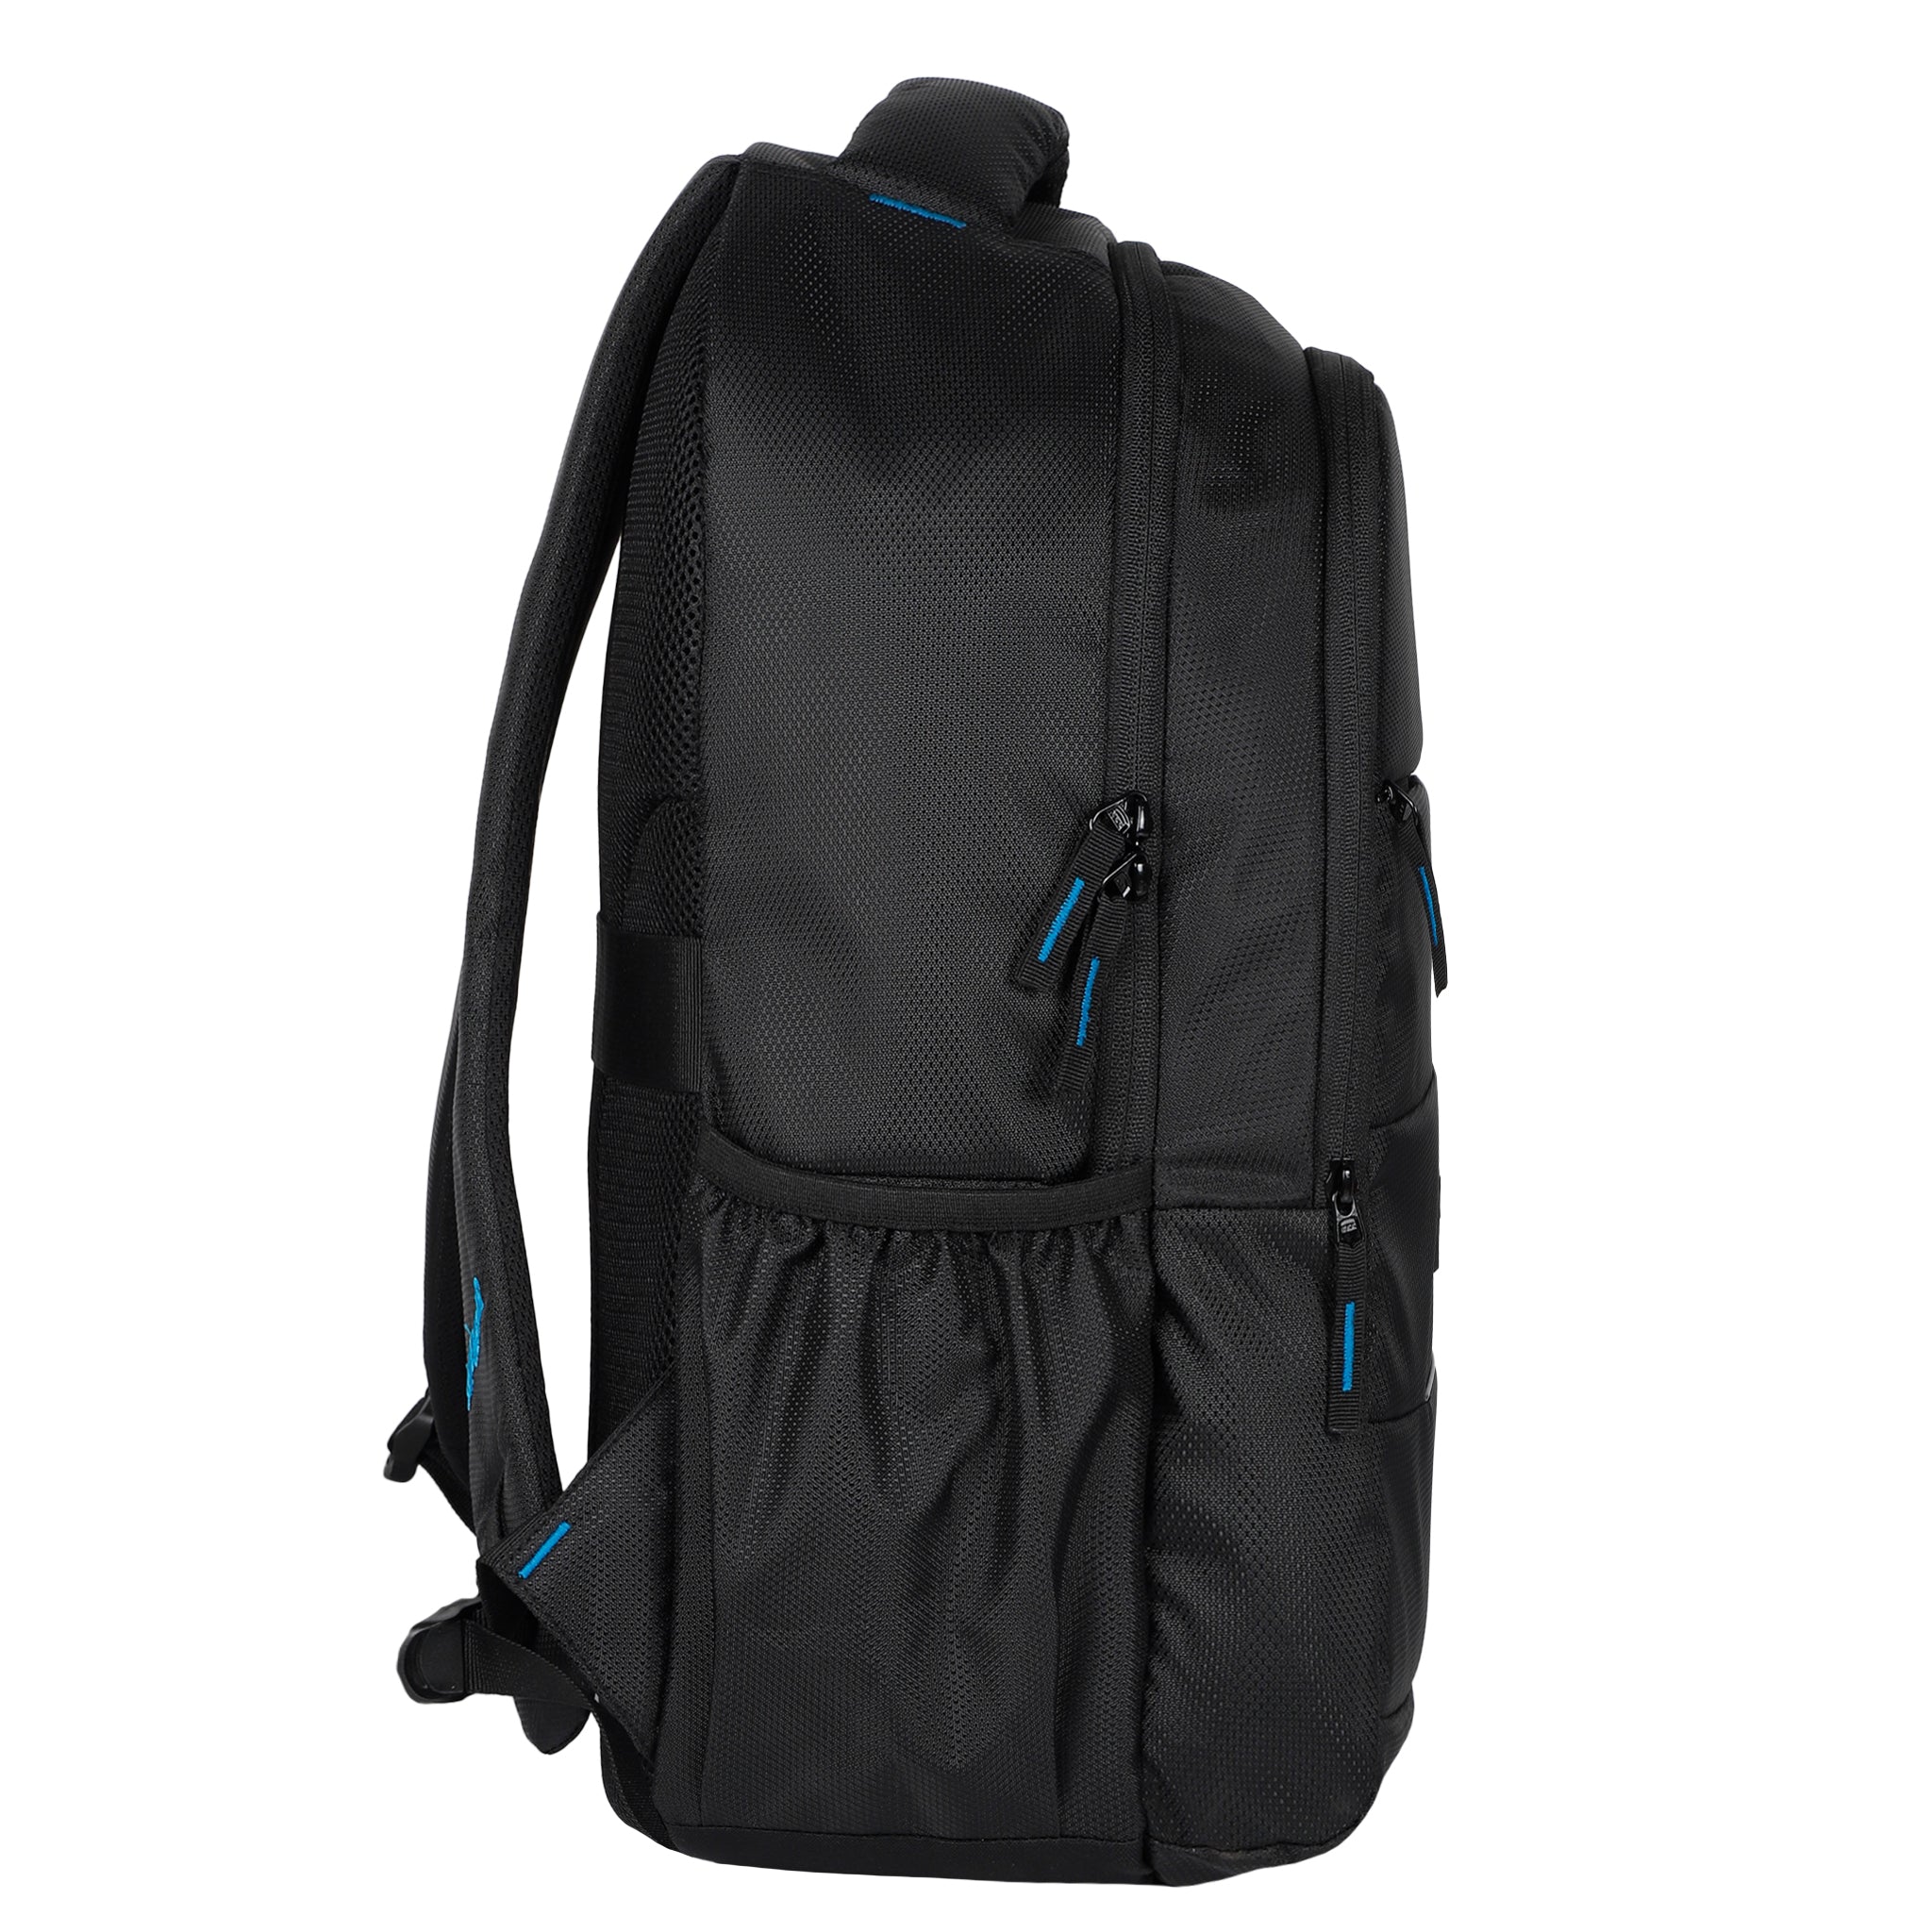 Agatti TrendSetter 1329 25 L Backpack 25 L Laptop Backpack Blue - Price in  India | Flipkart.com